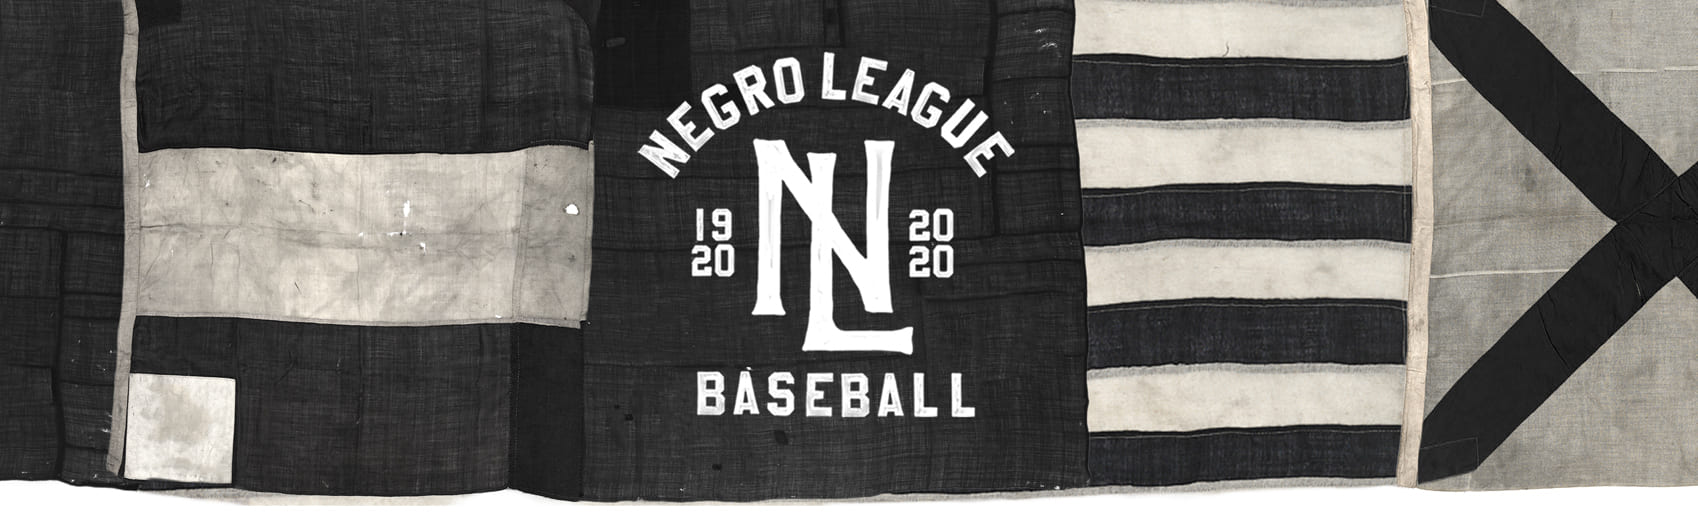 negro league baseball shop